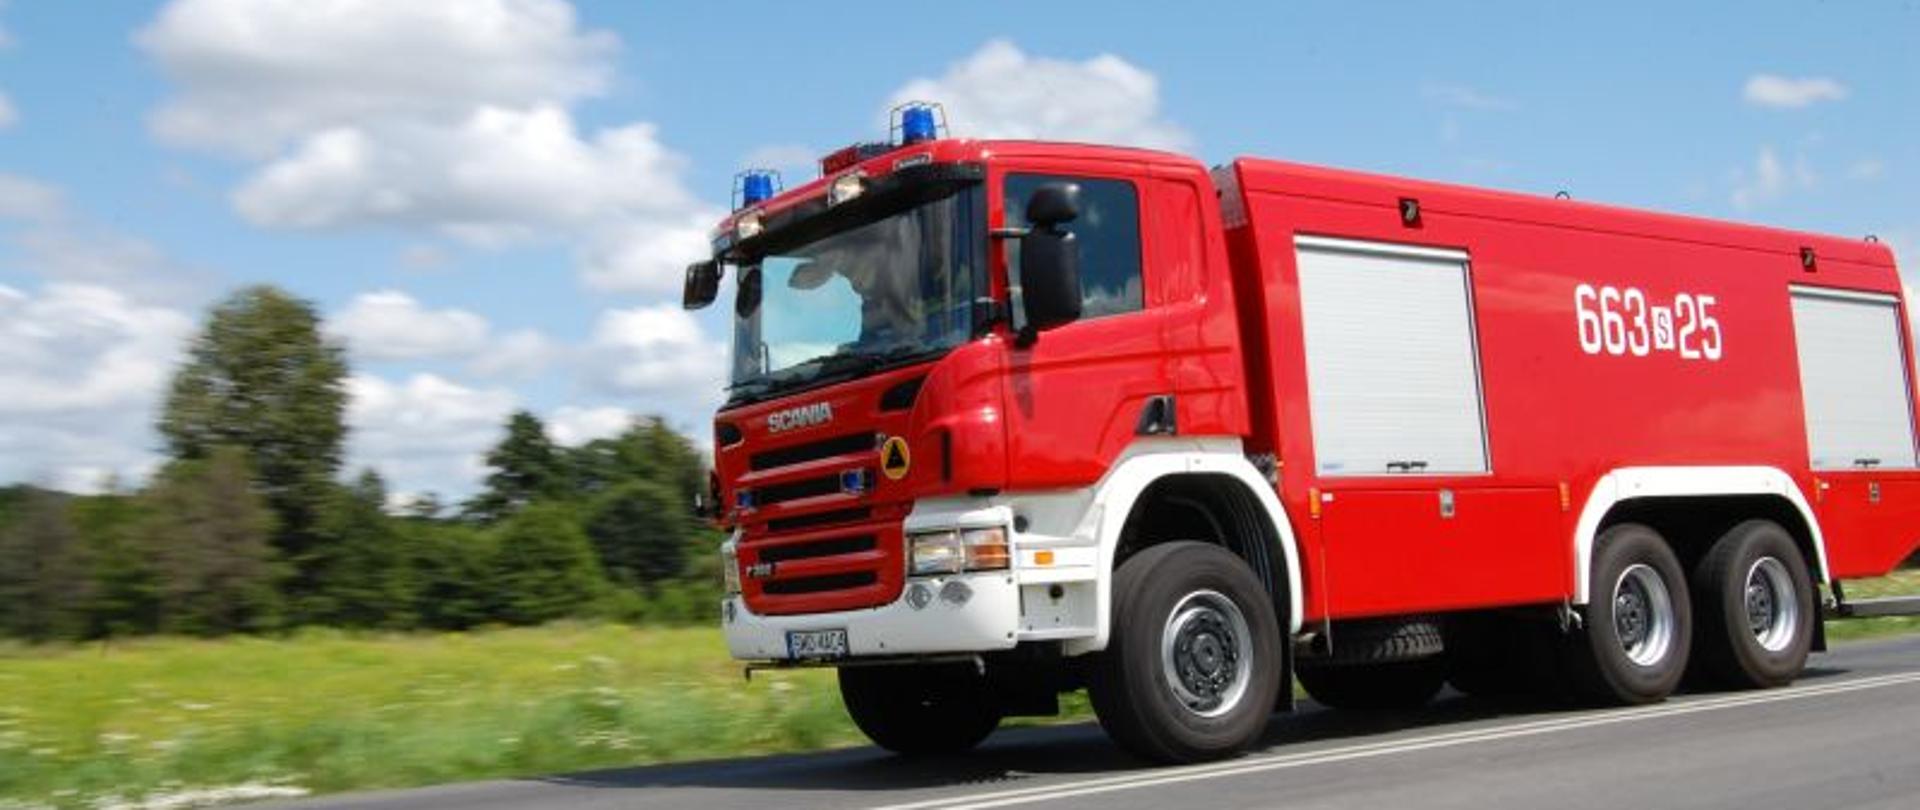 Zdjęcie przedstawia samochód pożarniczy 